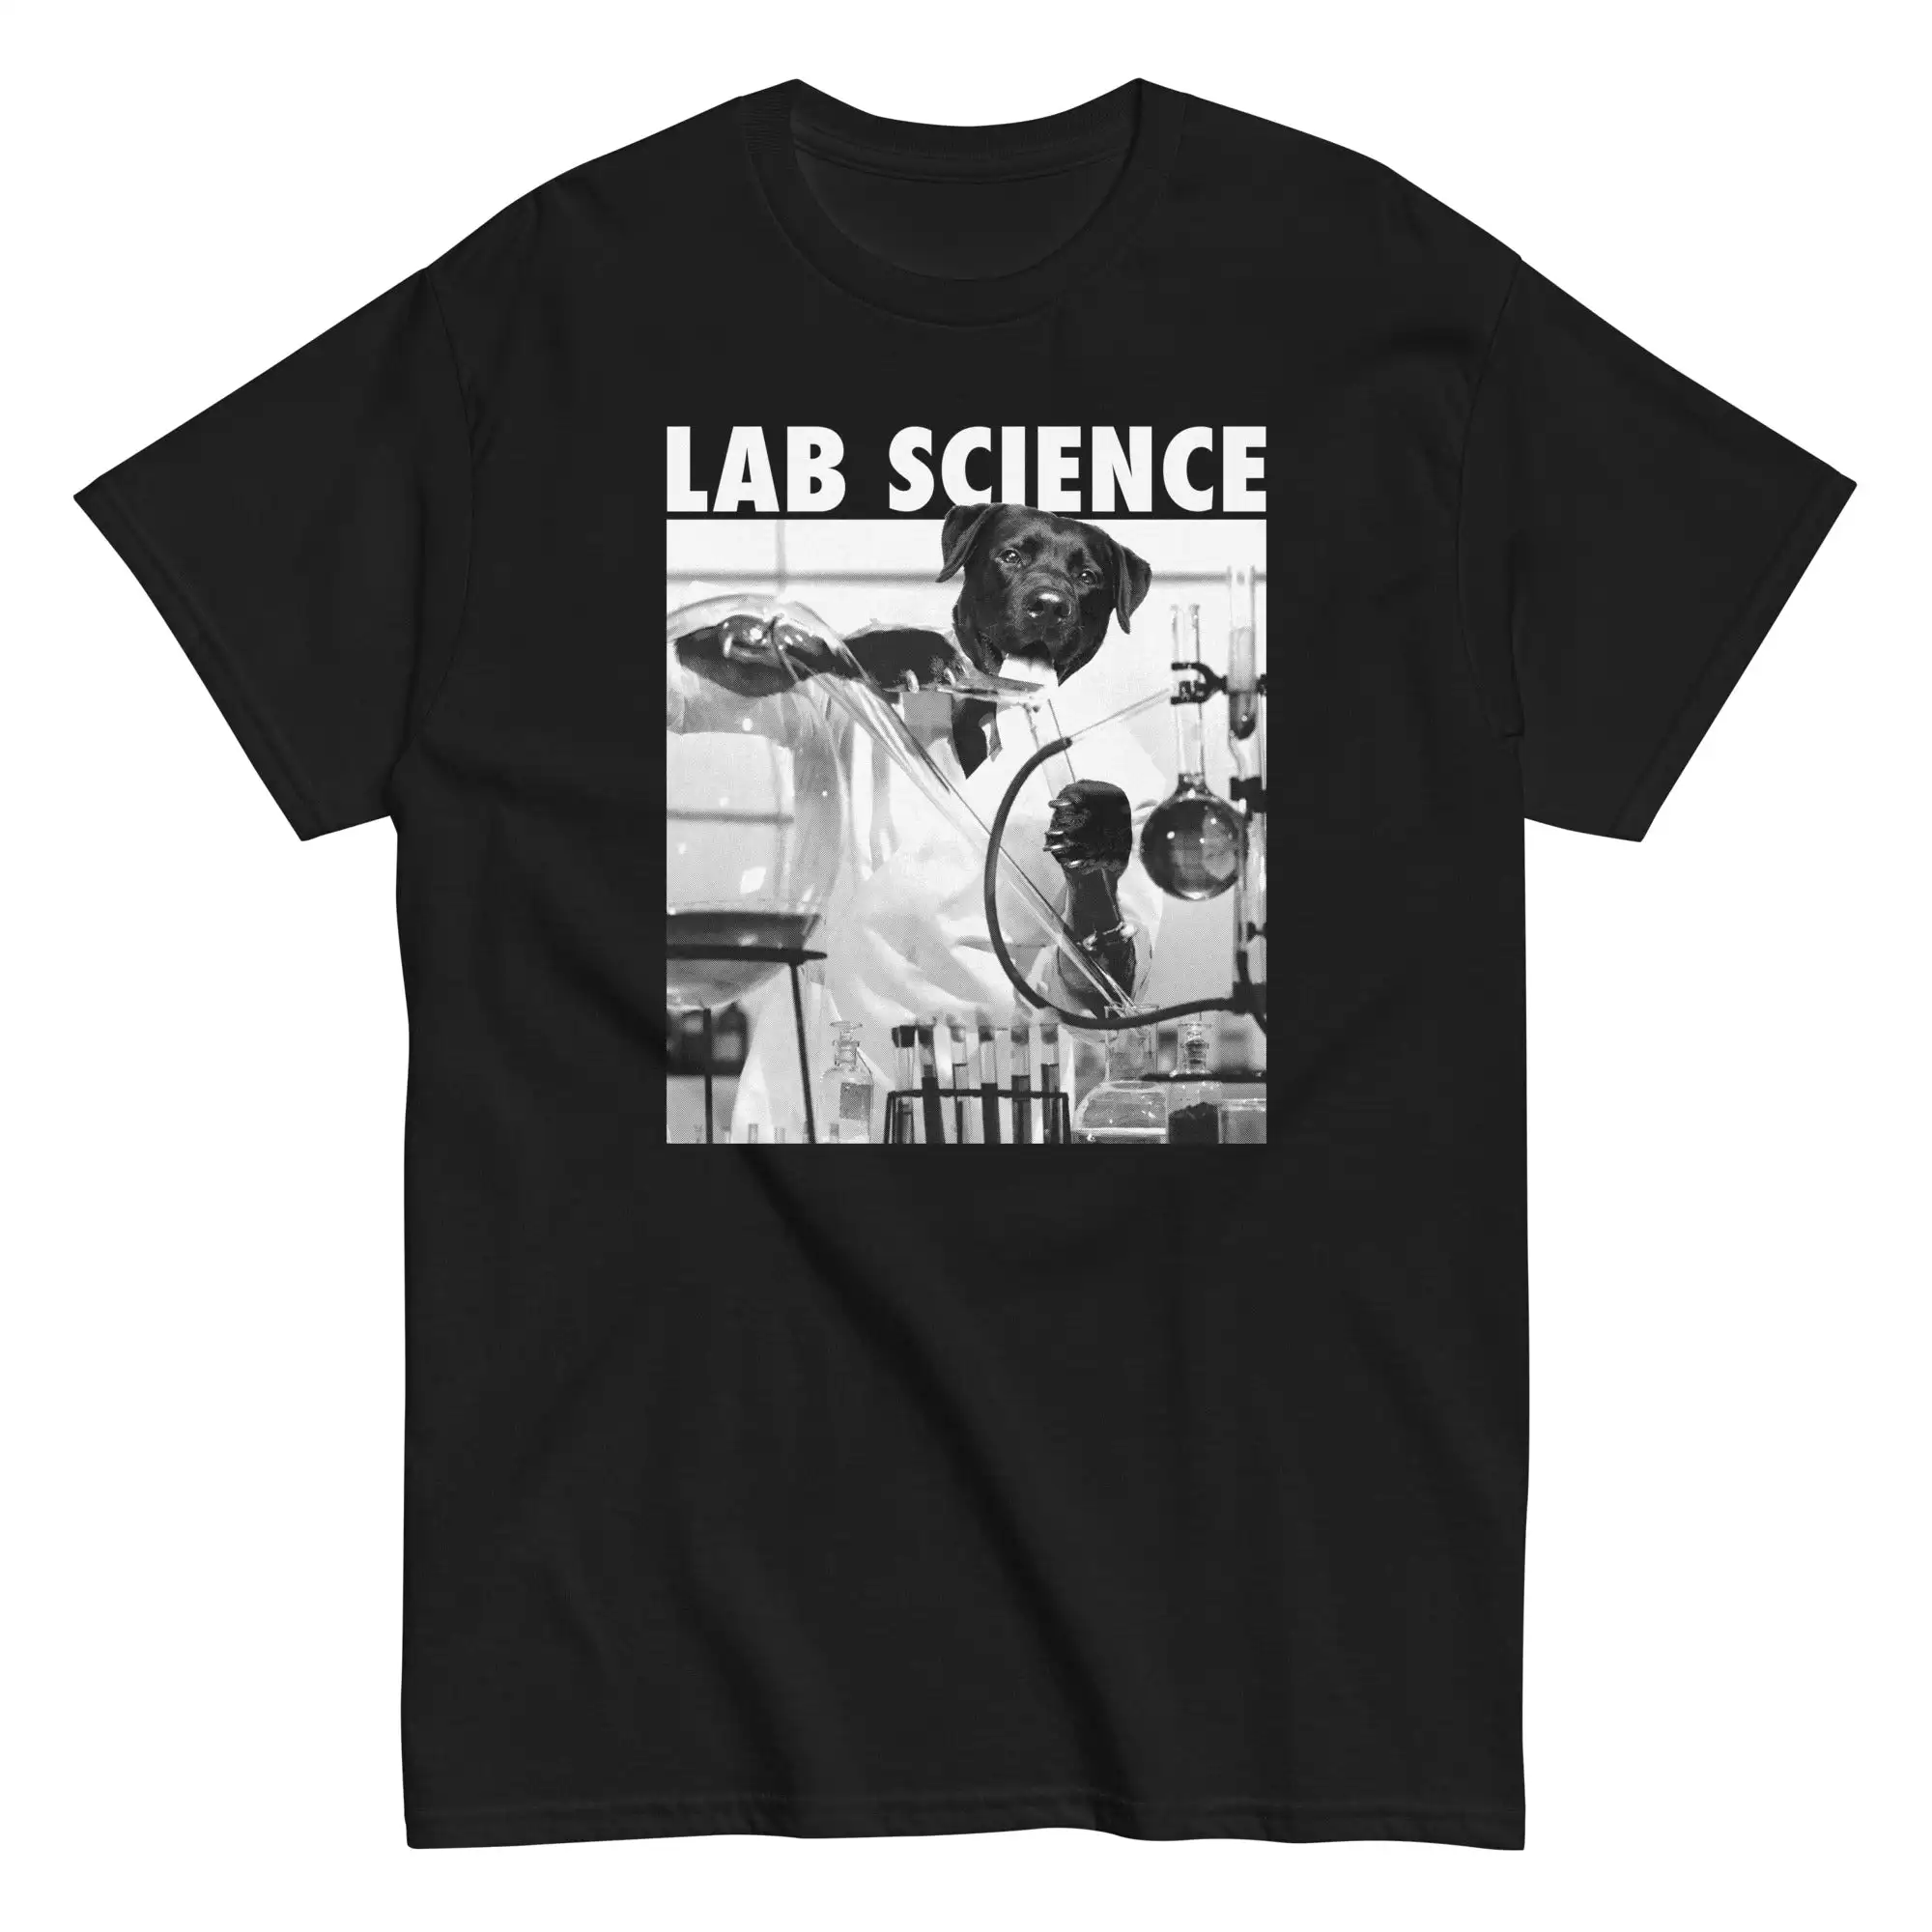 

Футболки Lab Science унисекс для мужчин и женщин, короткие летние футболки, повседневная хлопковая одежда, новое поступление